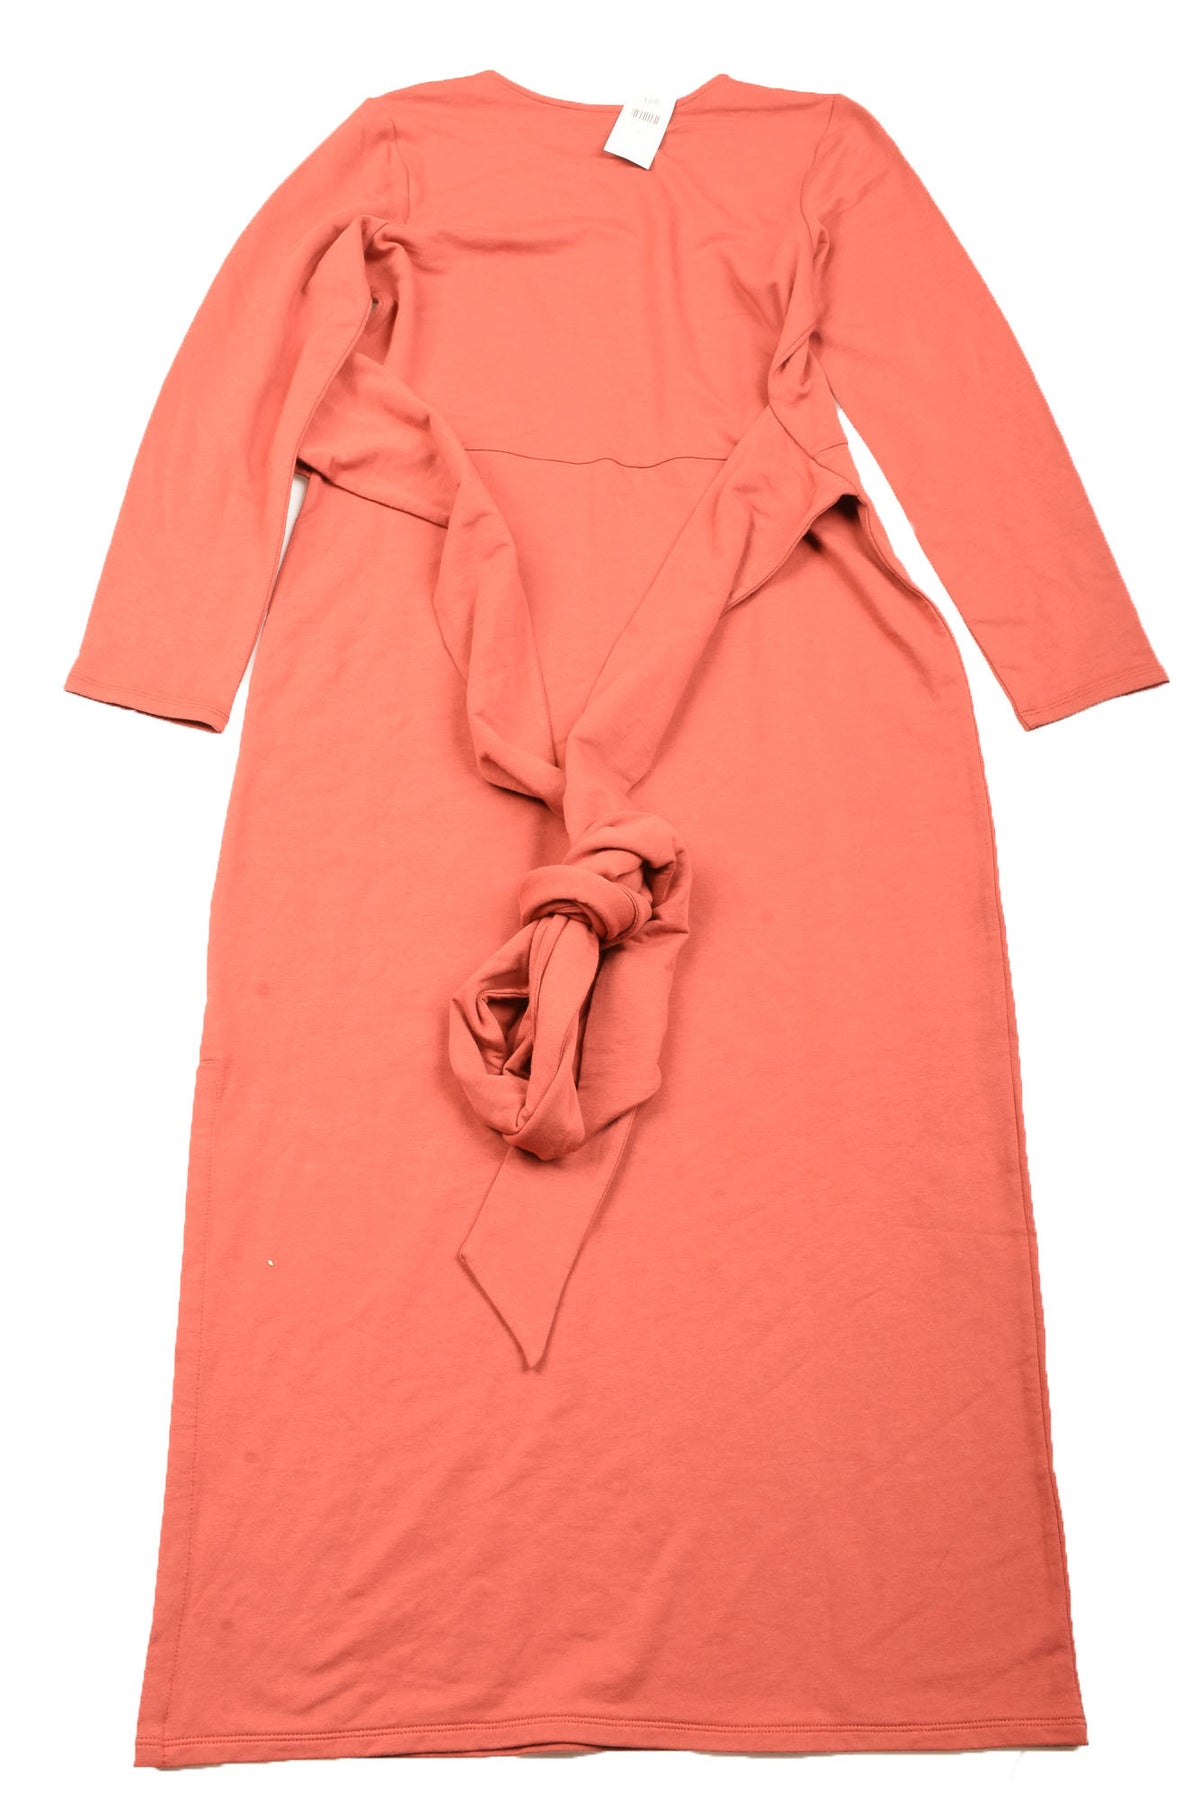 Pure Jill Size Small Women's Dress - Your Designer Thrift